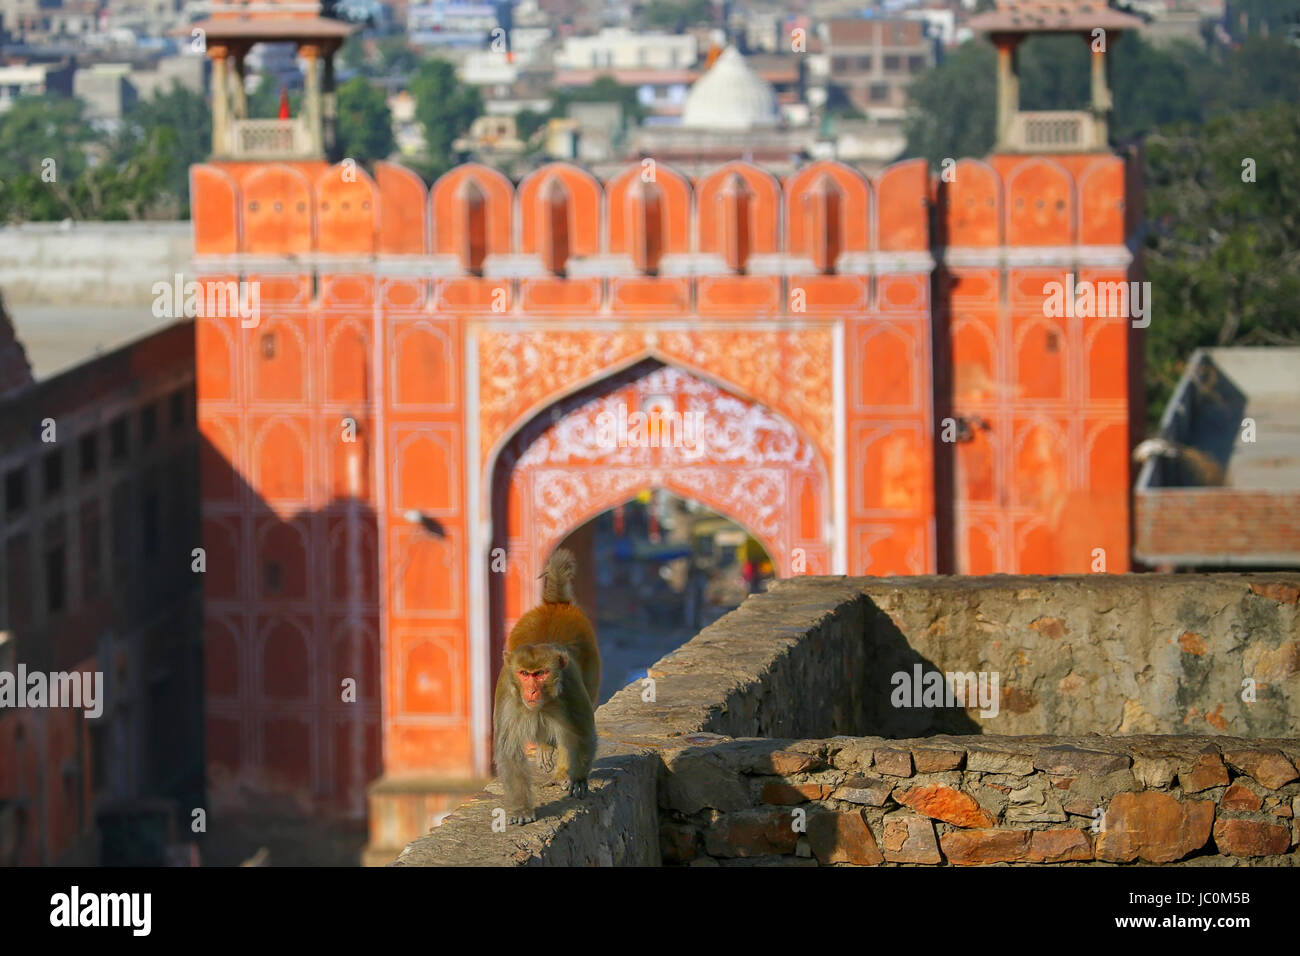 Macaco Rhesus (macaca mulatta) camminando su una parete vicino Suraj Pol a Jaipur, India. Jaipur è il capitale e la più grande città dello stato indiano del Rajas Foto Stock